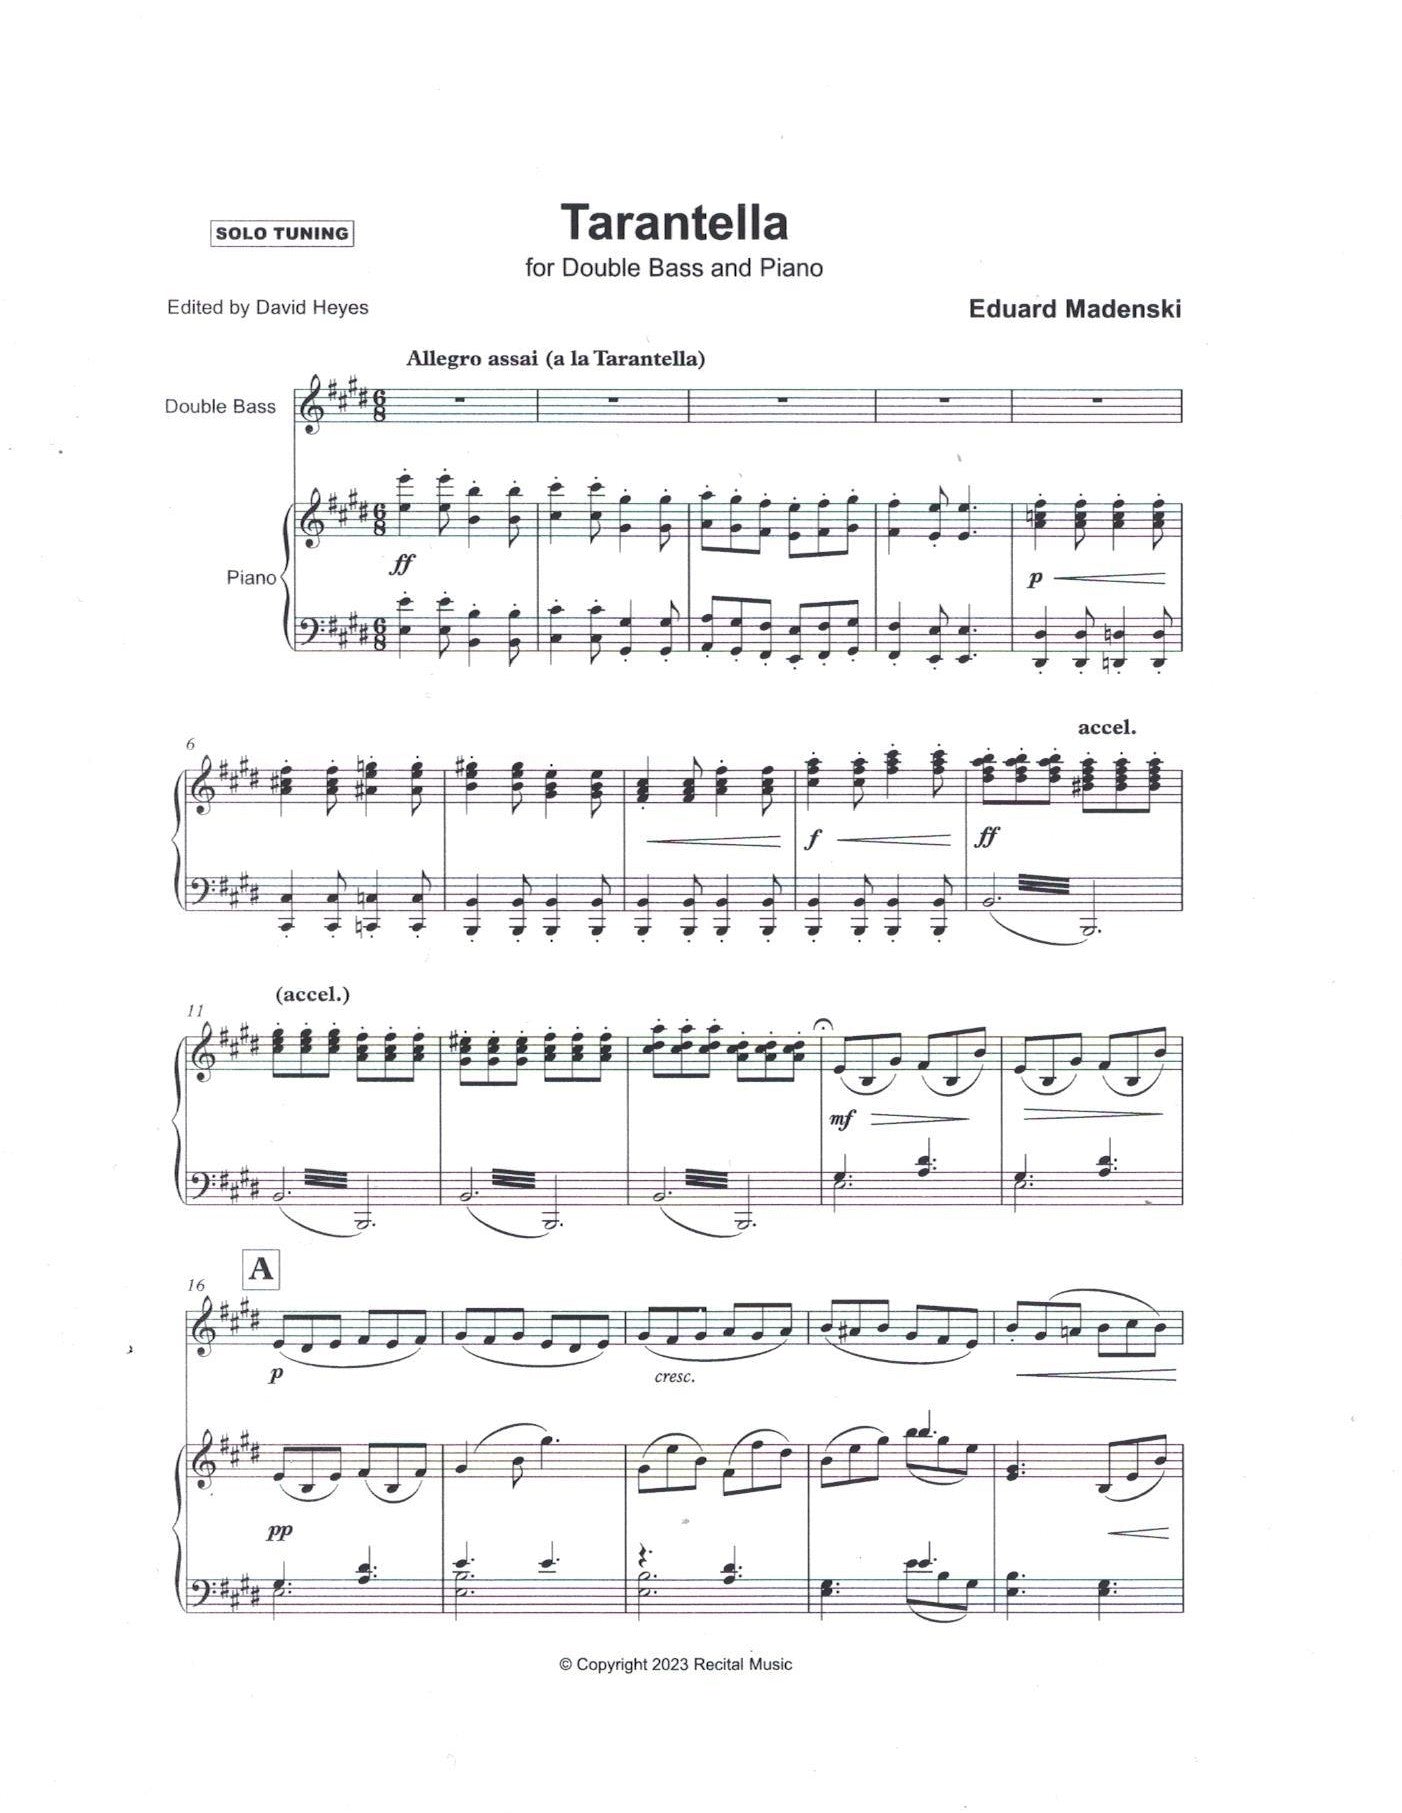 Eduard Madenski: Tarantella for double bass & piano